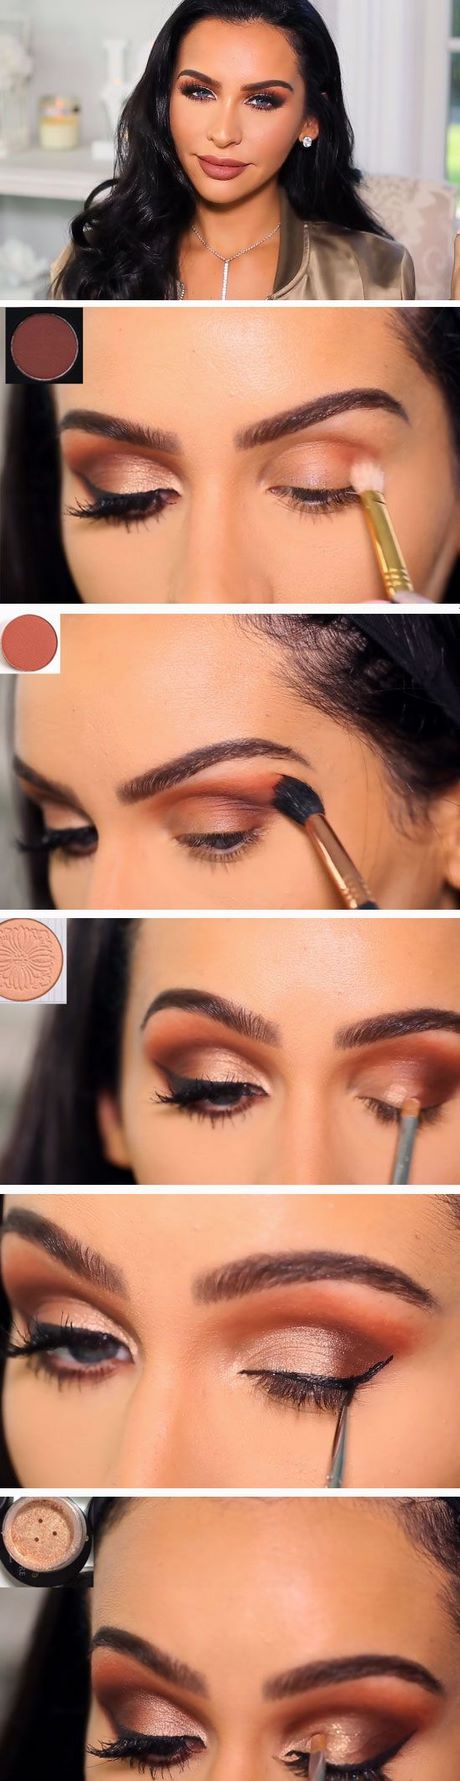 carli-bybel-eye-makeup-tutorial-07 Carli bybel oog make-up tutorial